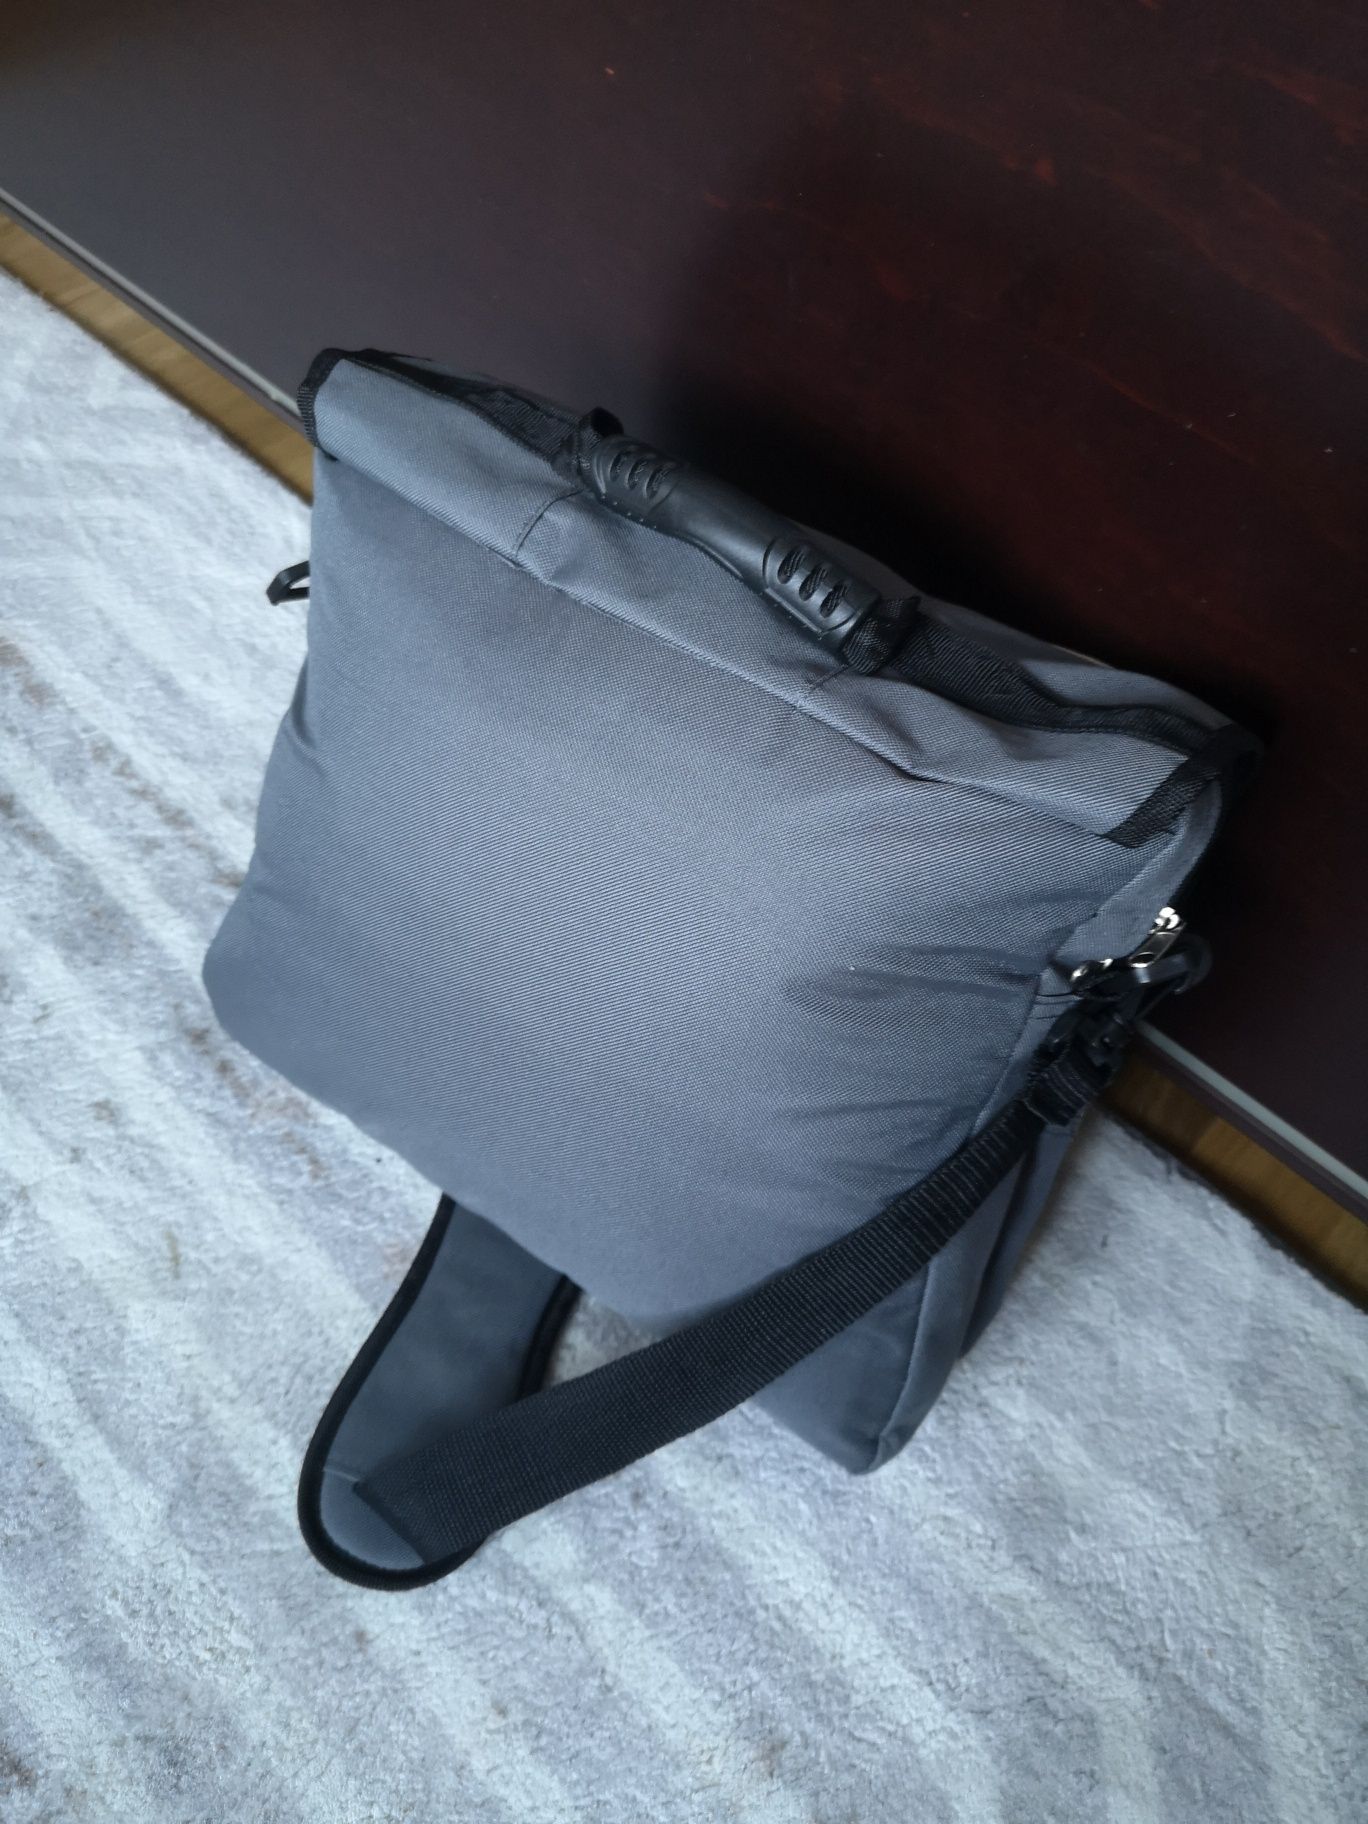 Torba podróżna aktówka na laptopa szara bagaż podręczny do samolotu